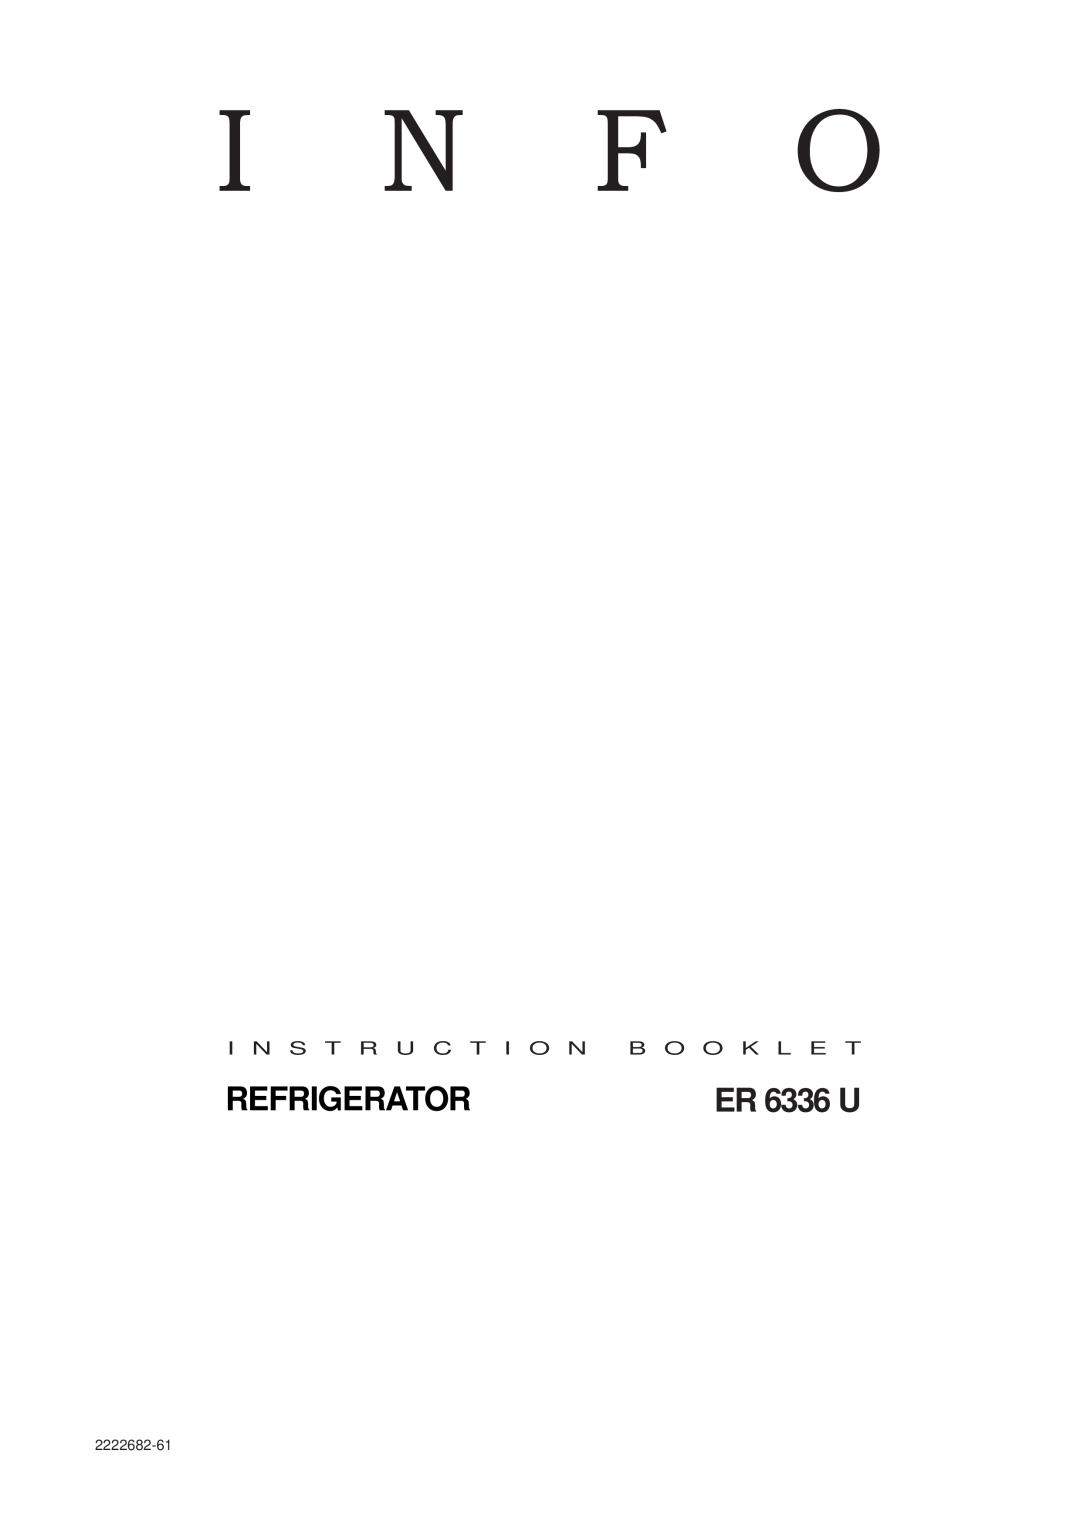 Electrolux ER 6336 U manual Refrigerator, I N F O, 2222682-61 